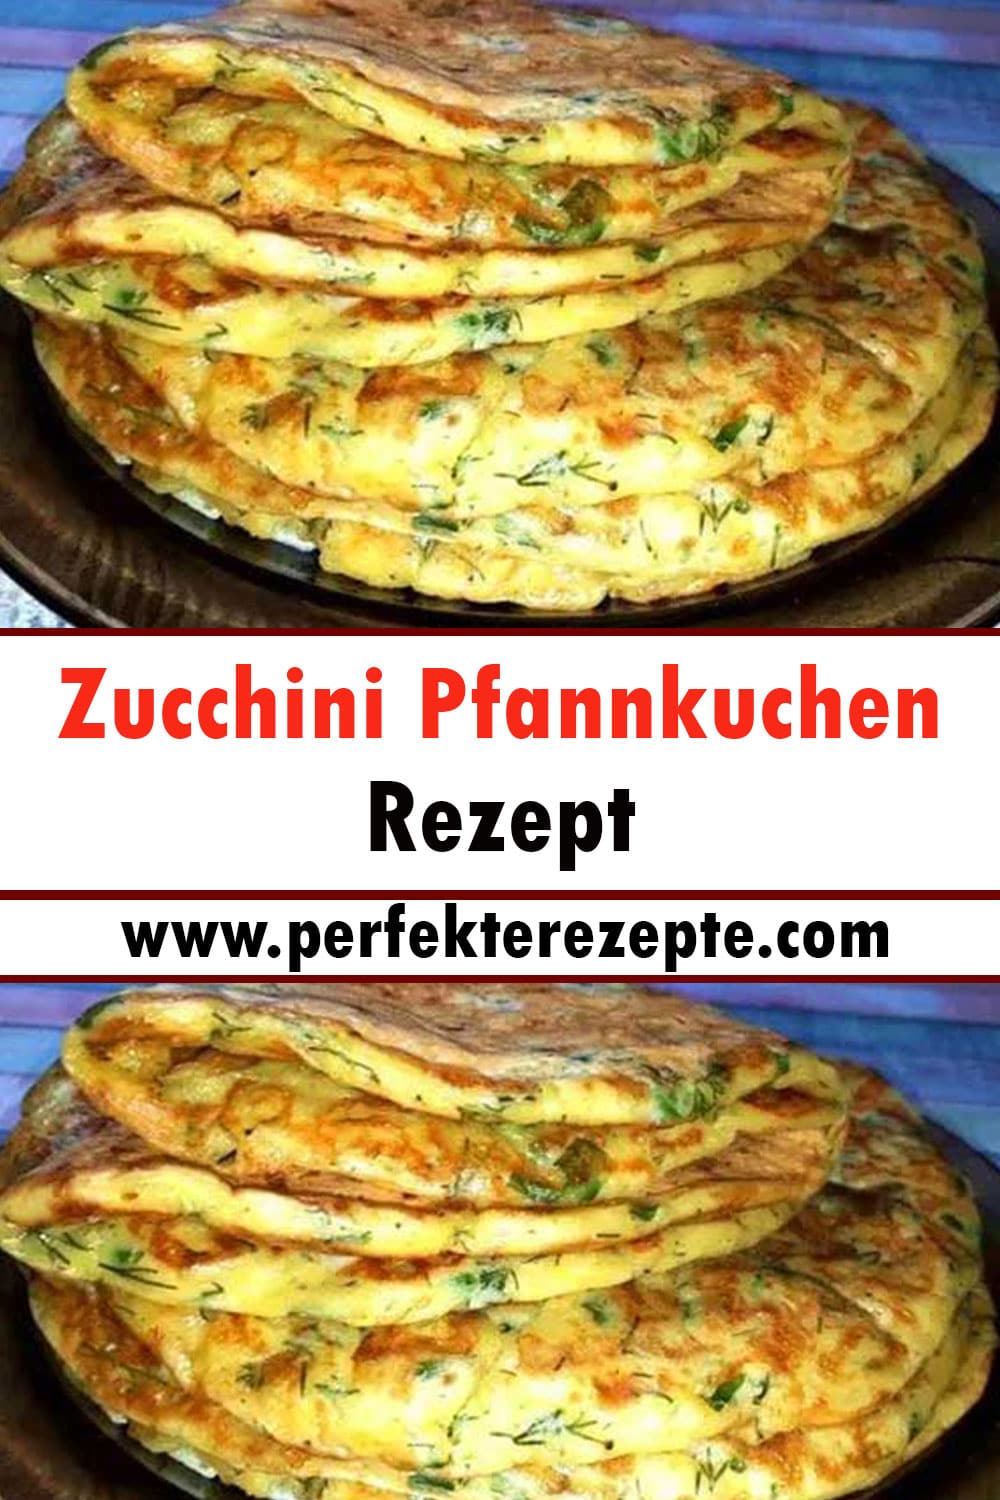 Zucchini Pfannkuchen Rezept